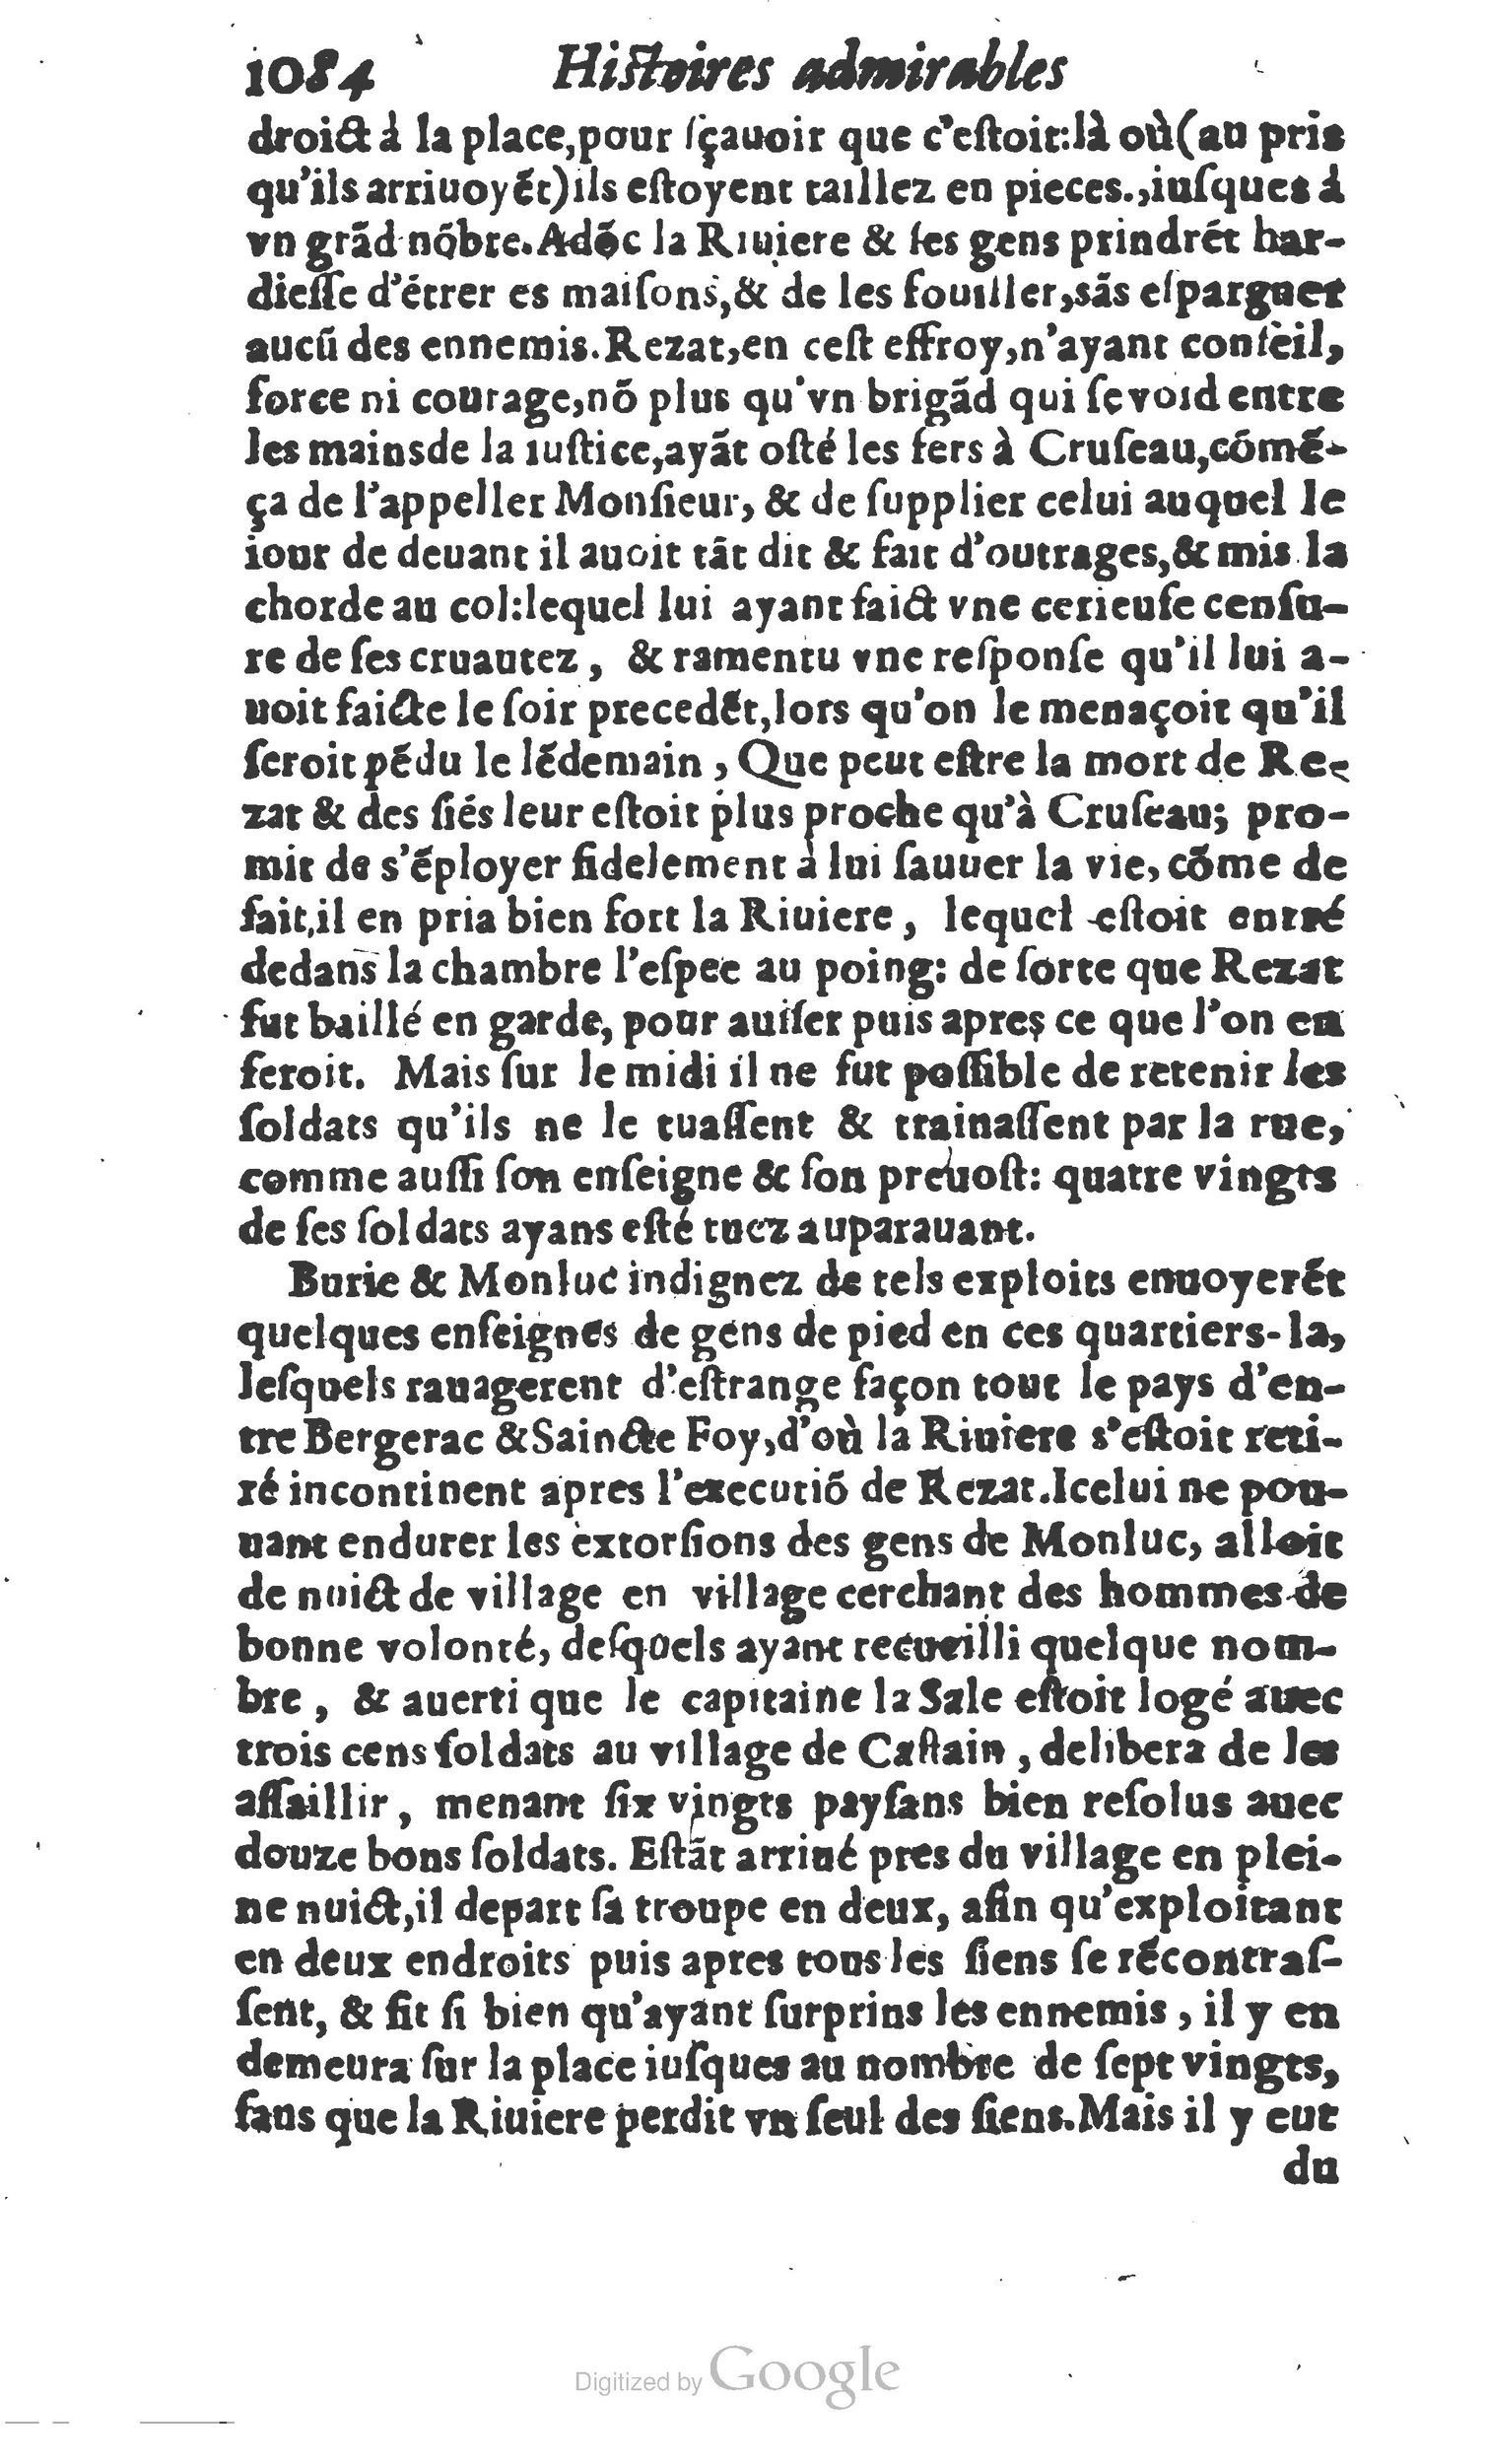 1610 Trésor d’histoires admirables et mémorables de nostre temps Marceau Princeton_Page_1103.jpg